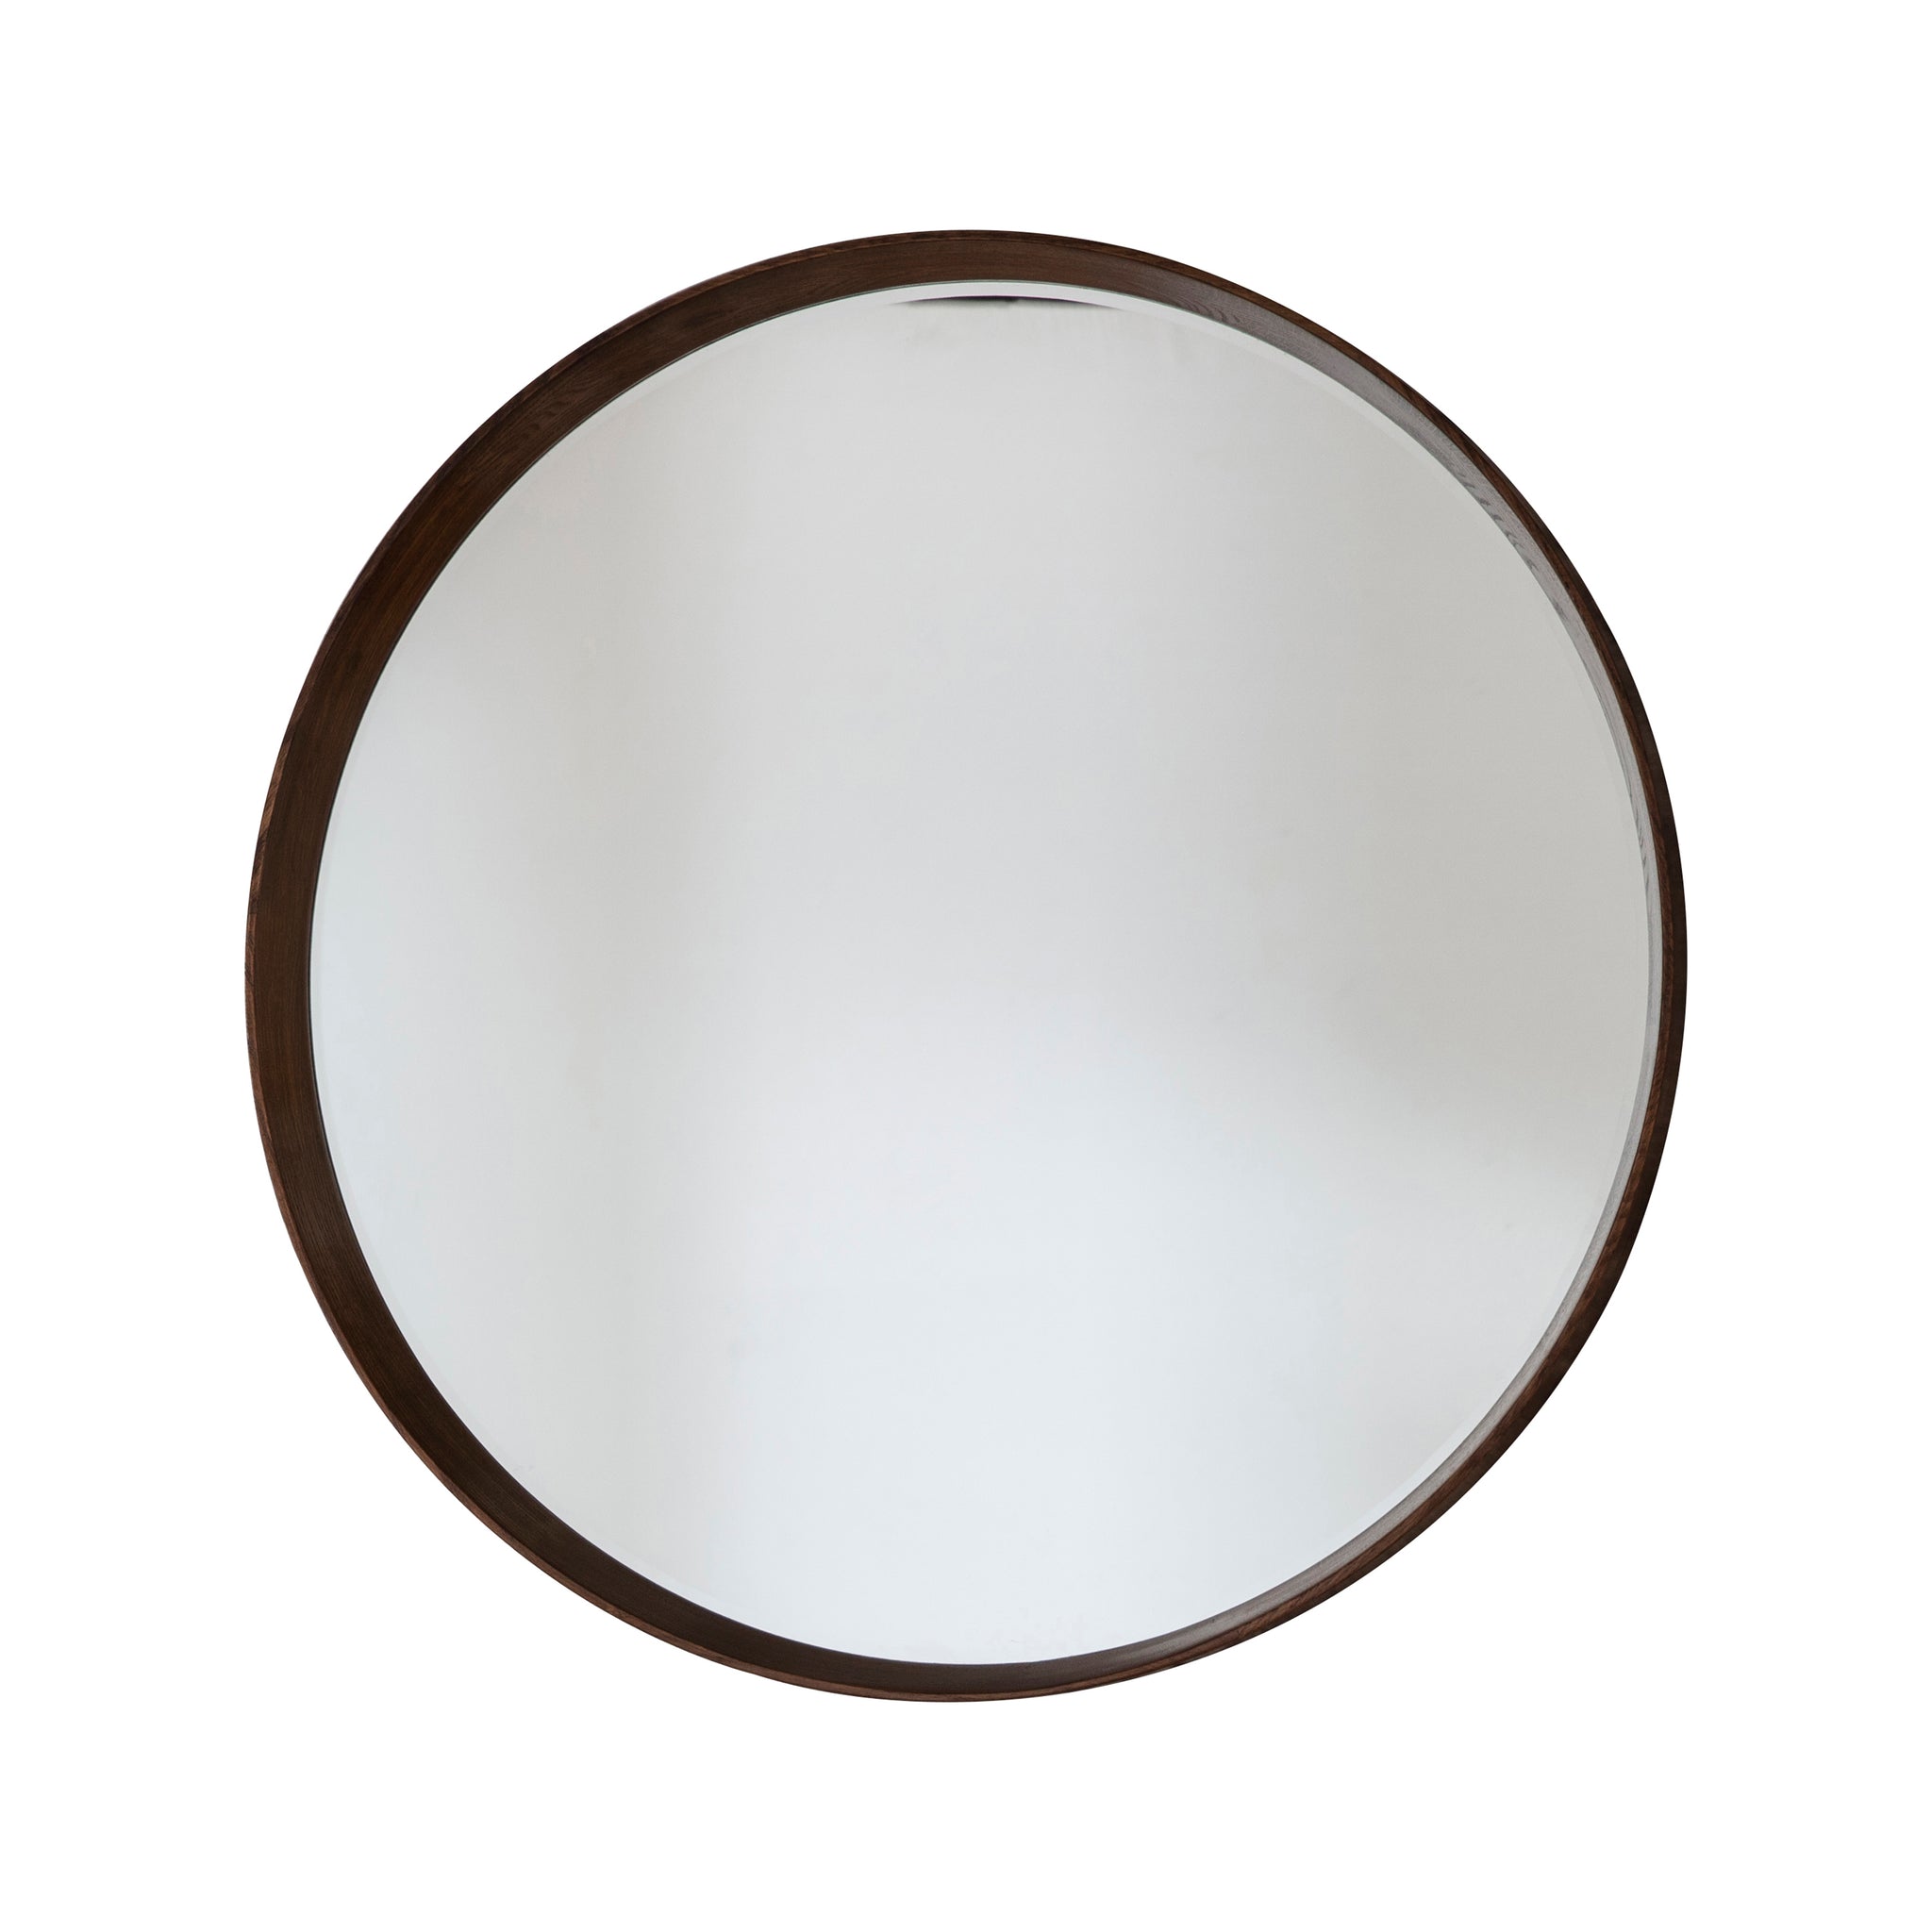 Keats Round Mirror Walnut 100 cm